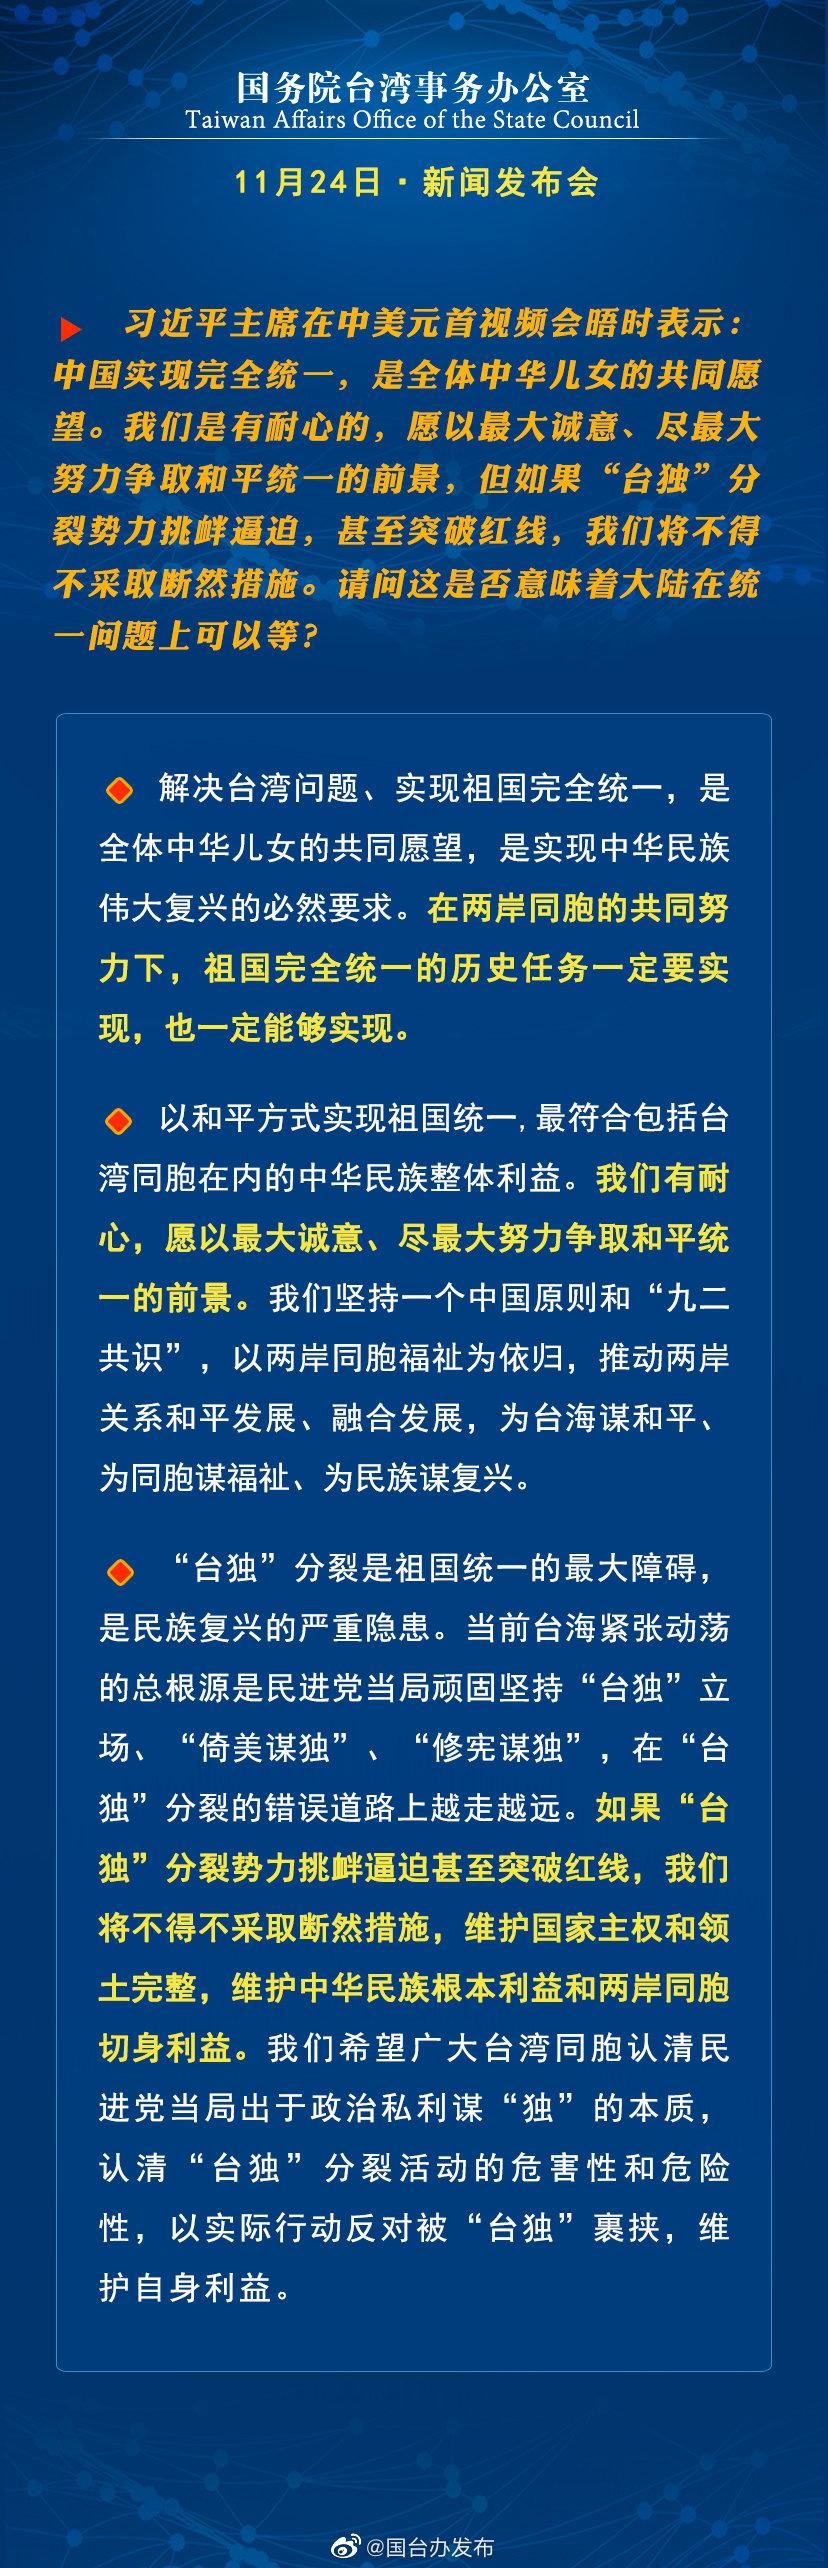 国务院台湾事务办公室11月24日·新闻发布会